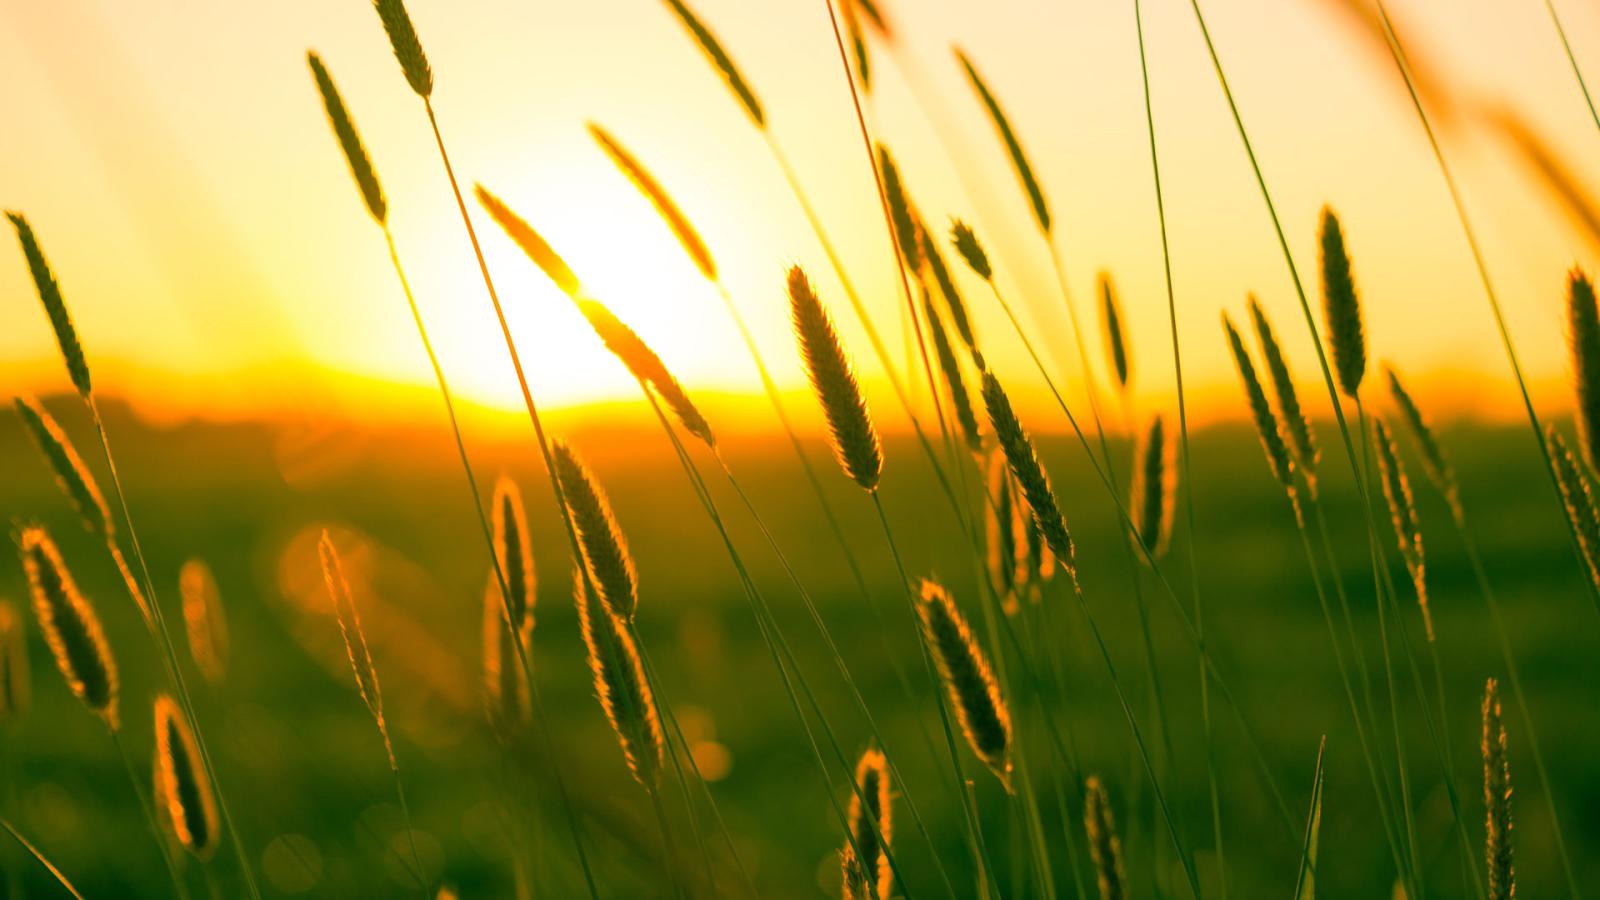 Long grass at sunset